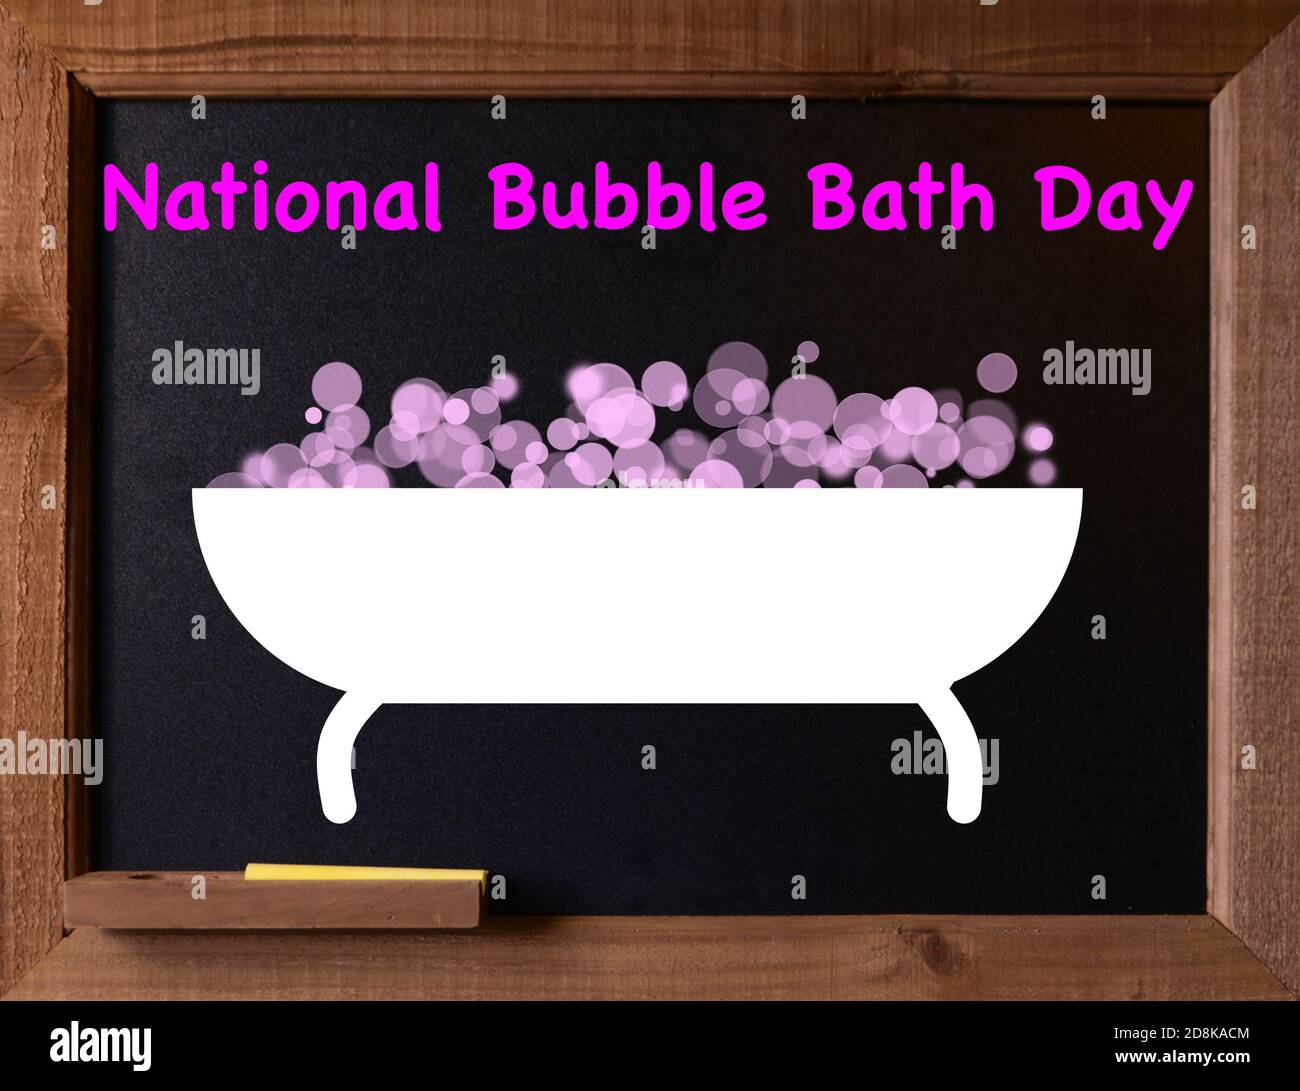 Tableau de surveillance avec graphique de bain à bulles pour la journée nationale de bain à bulles Banque D'Images